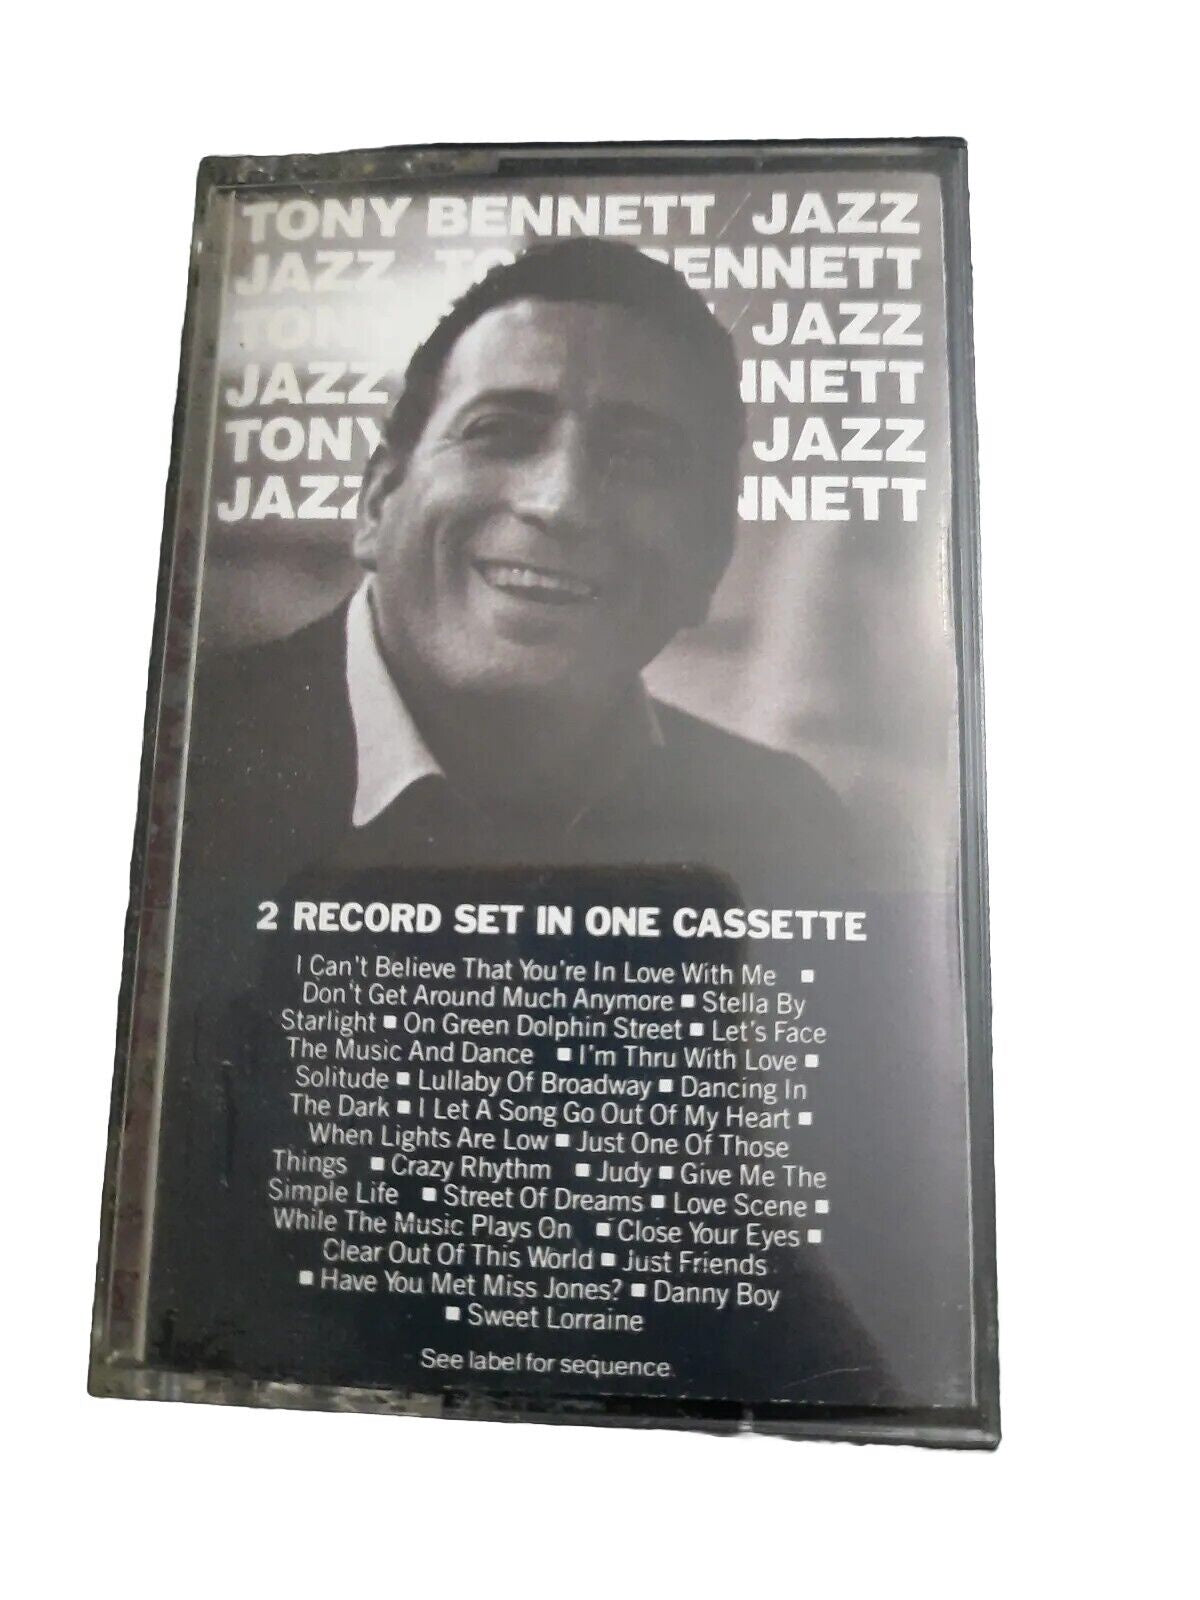 Tony Bennett – Jazz - Used Cassette 1987 Columbia Tape - Vocal / Swing